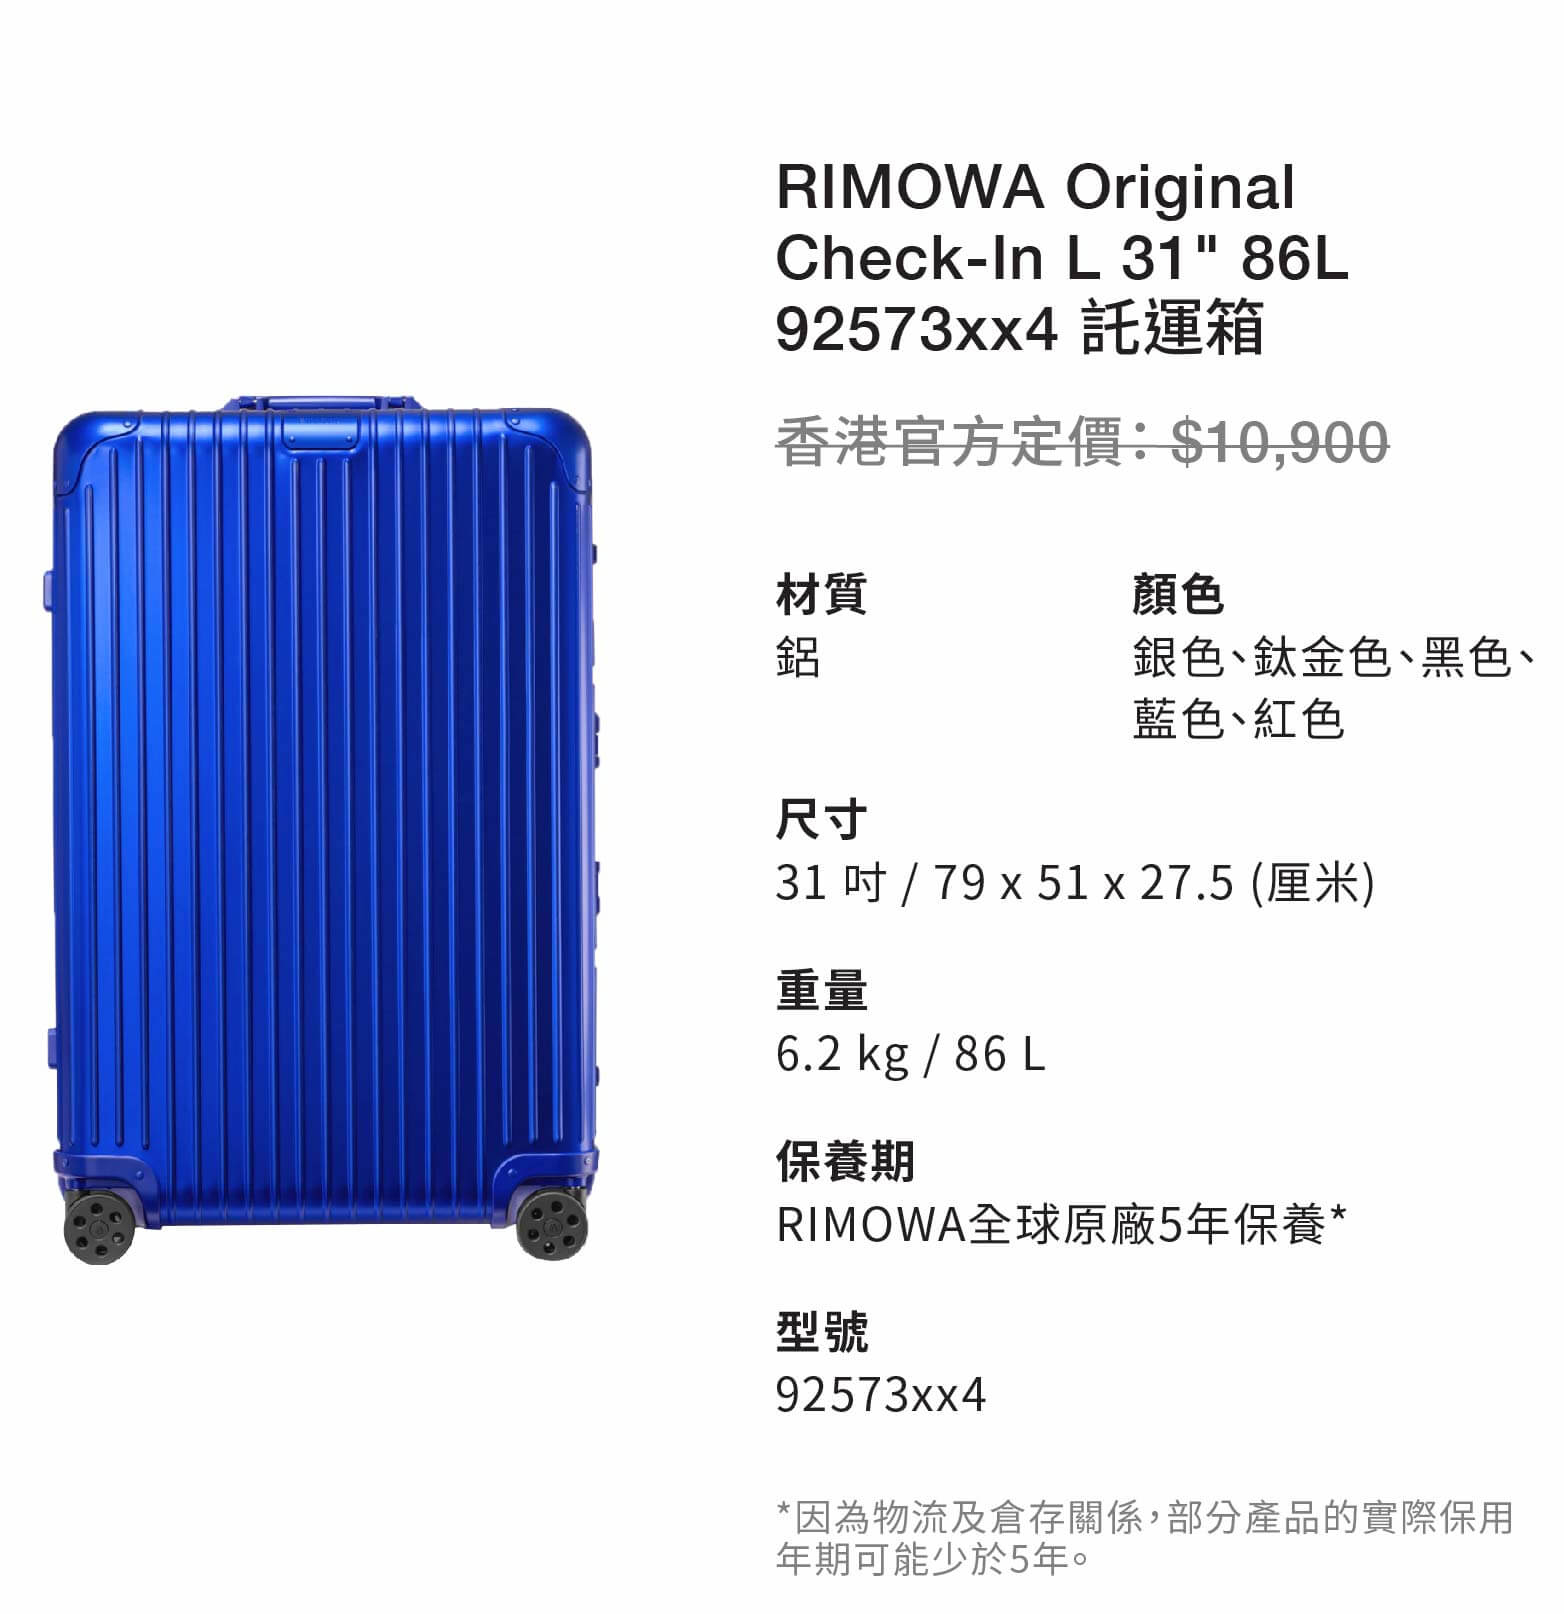 RIMOWA Original Check-In L 31